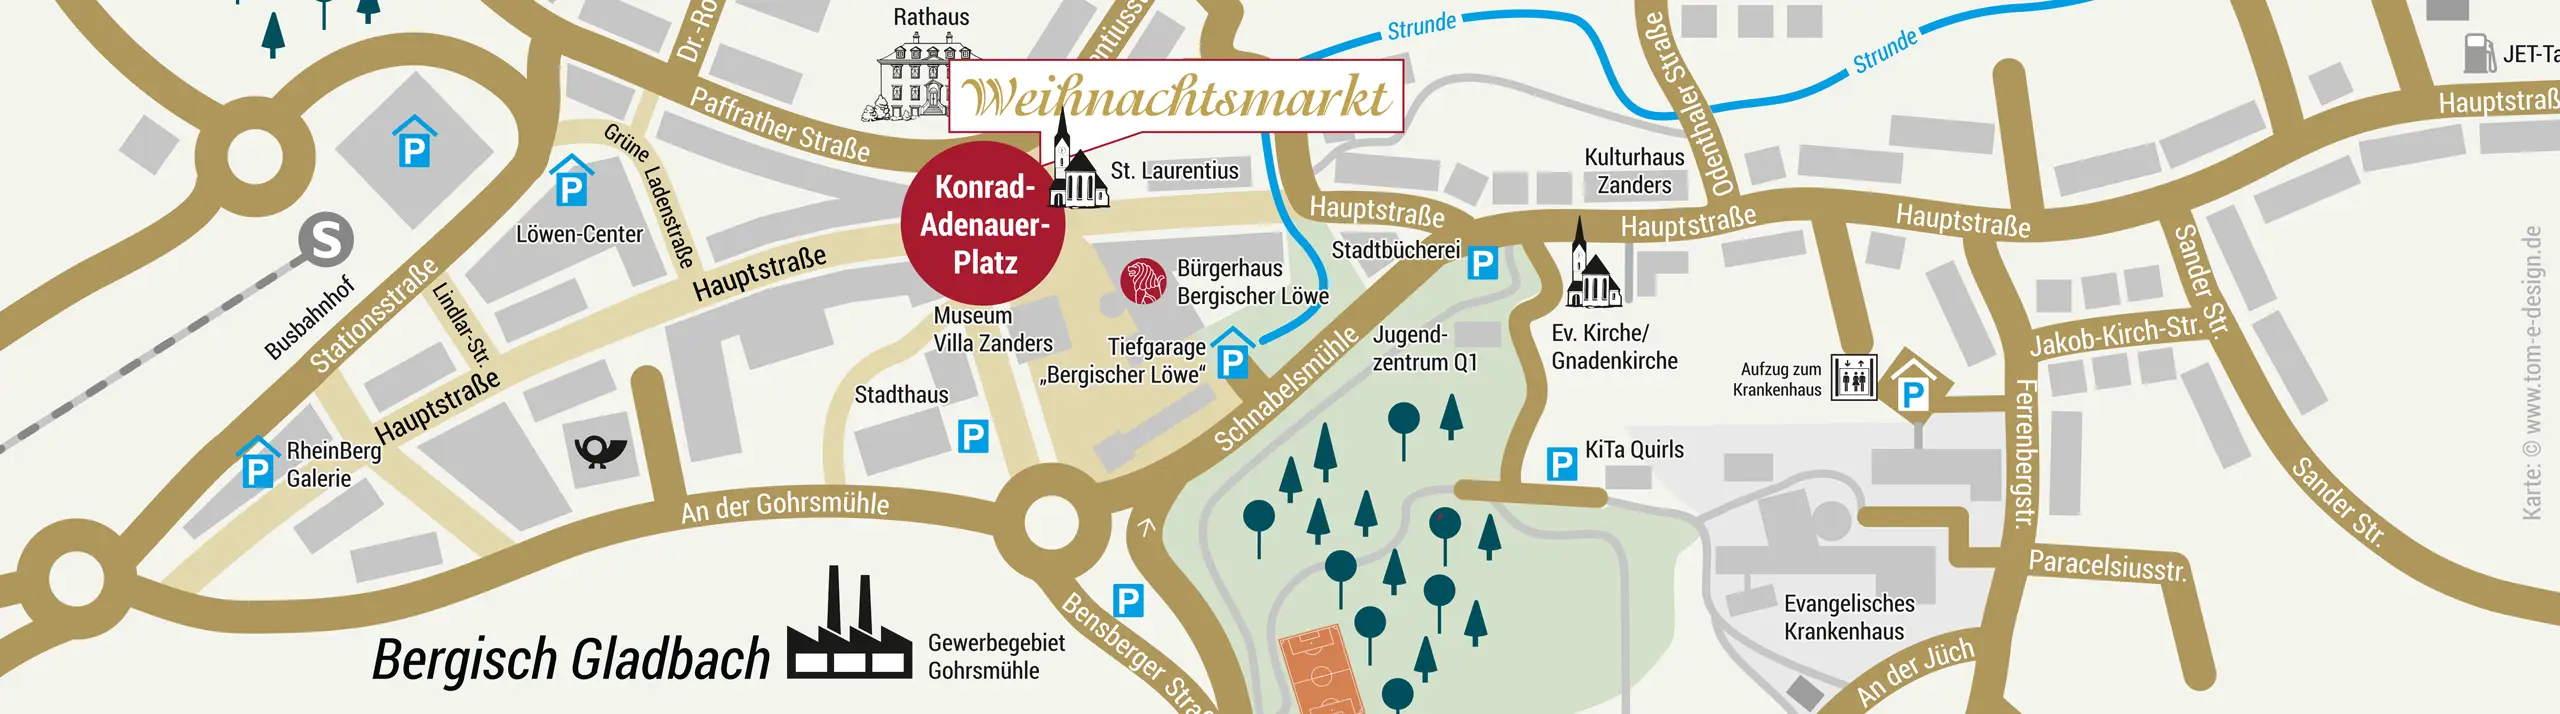 Anfahrztskarte zum Weihnachtsmarkt Bergisch Gladbach als PDF zum Download